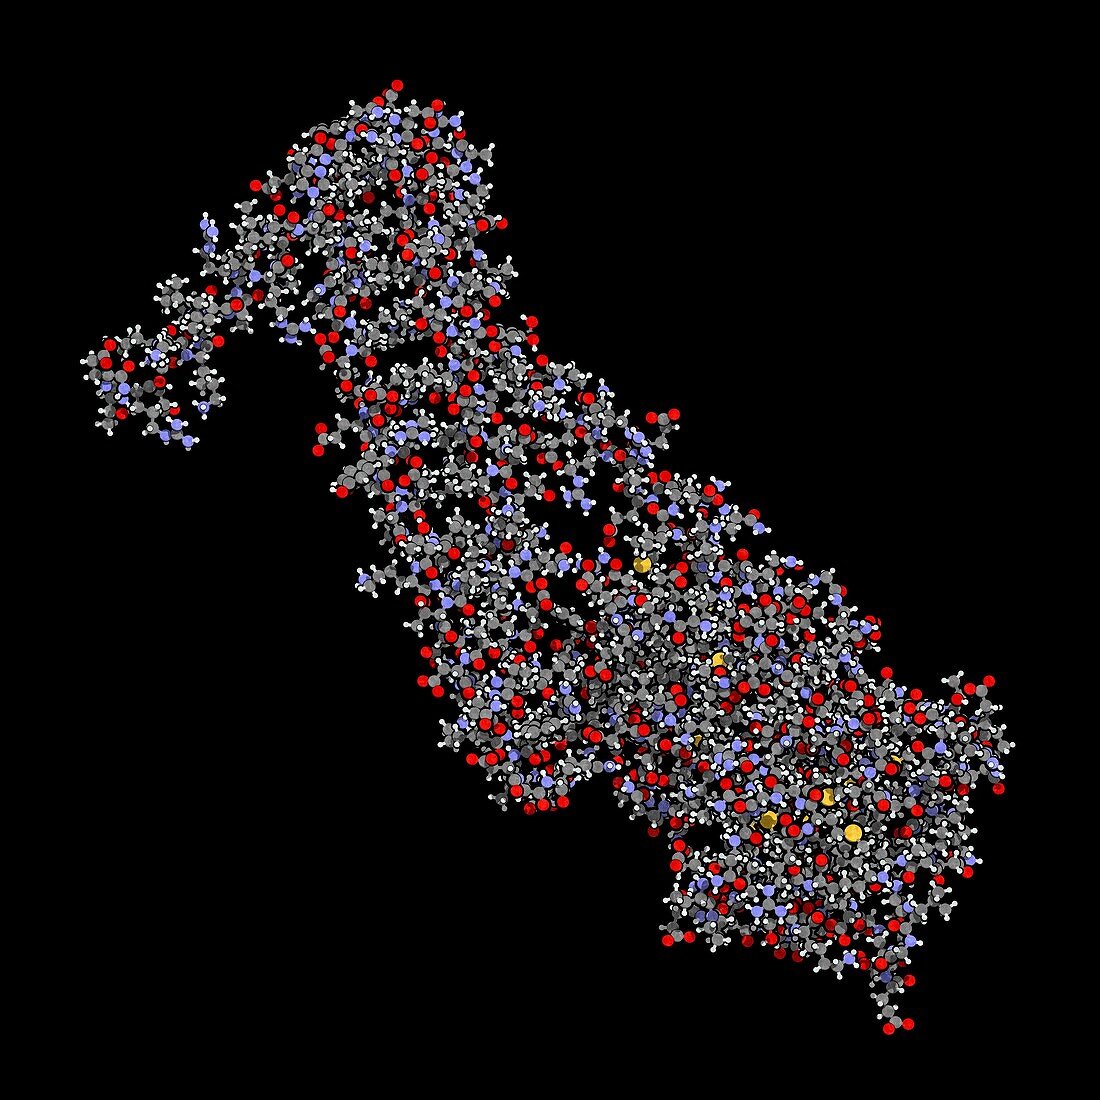 Troponin cardiac protein molecule, illustration